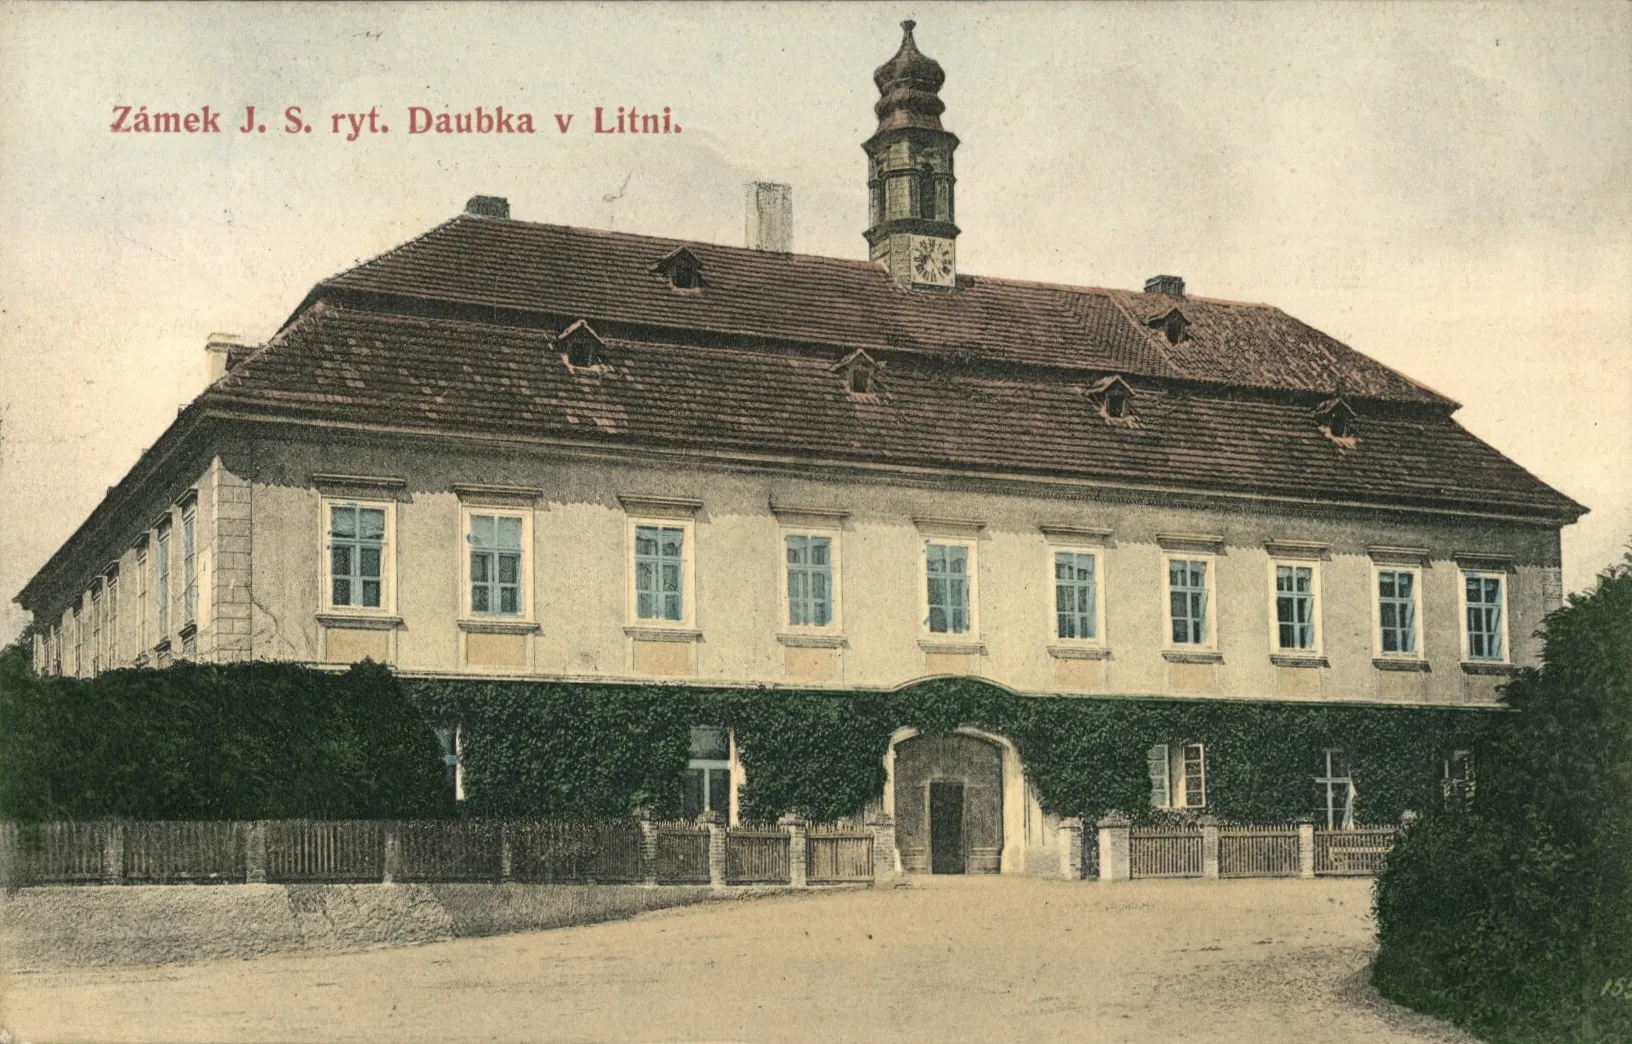 Photo showing: Zámek J. S. ryt. Daubka v Litni.